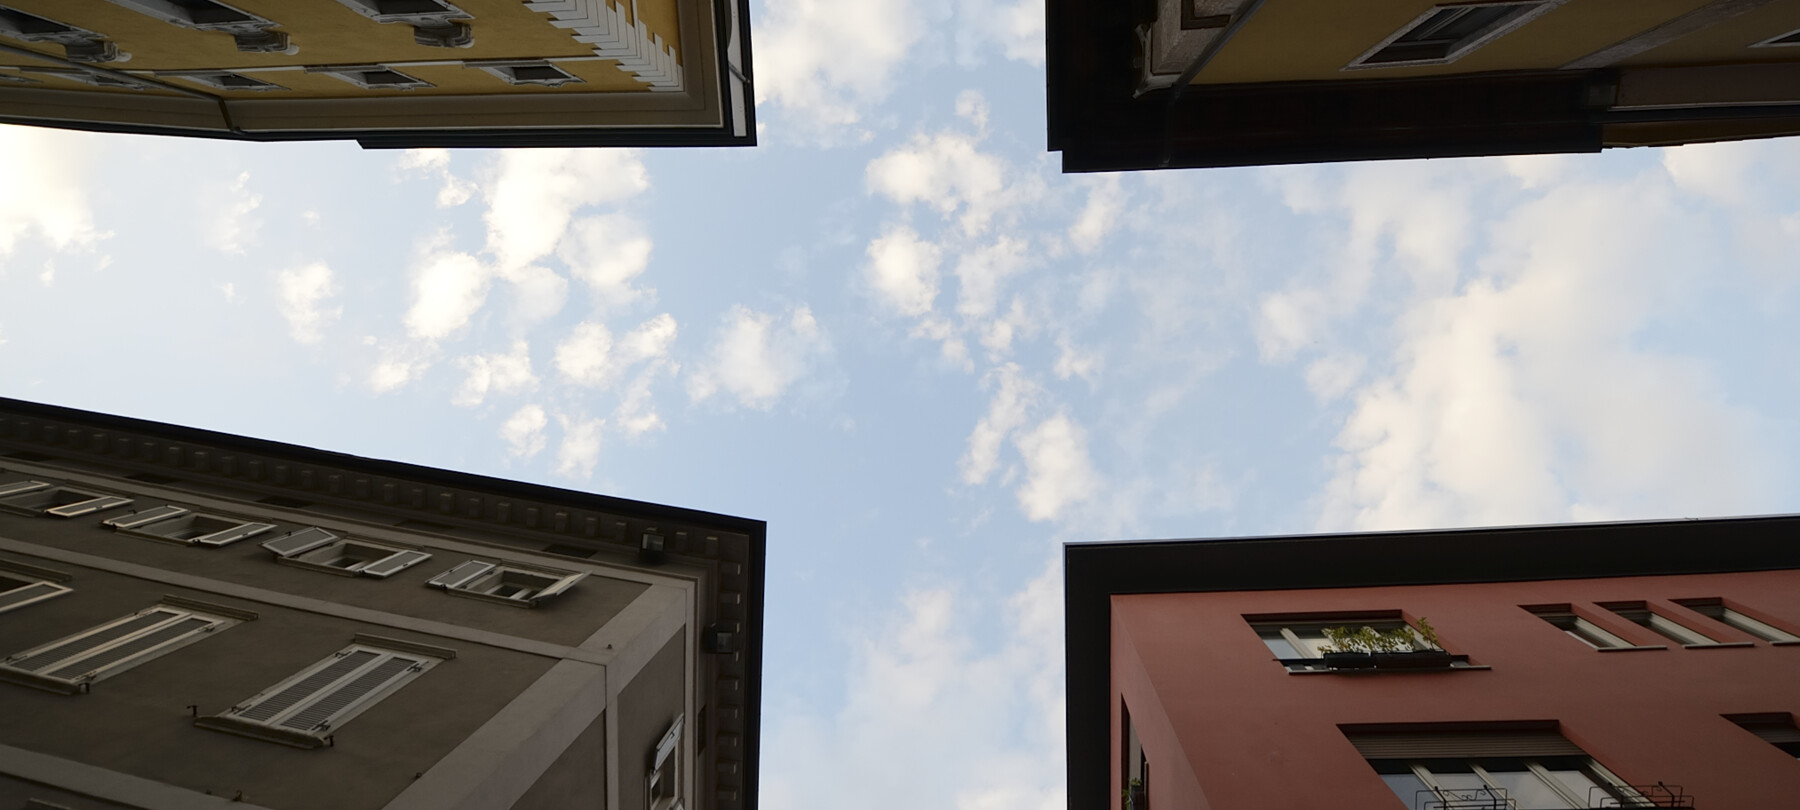 Una passeggiata nel centro di Trento: cosa vedere